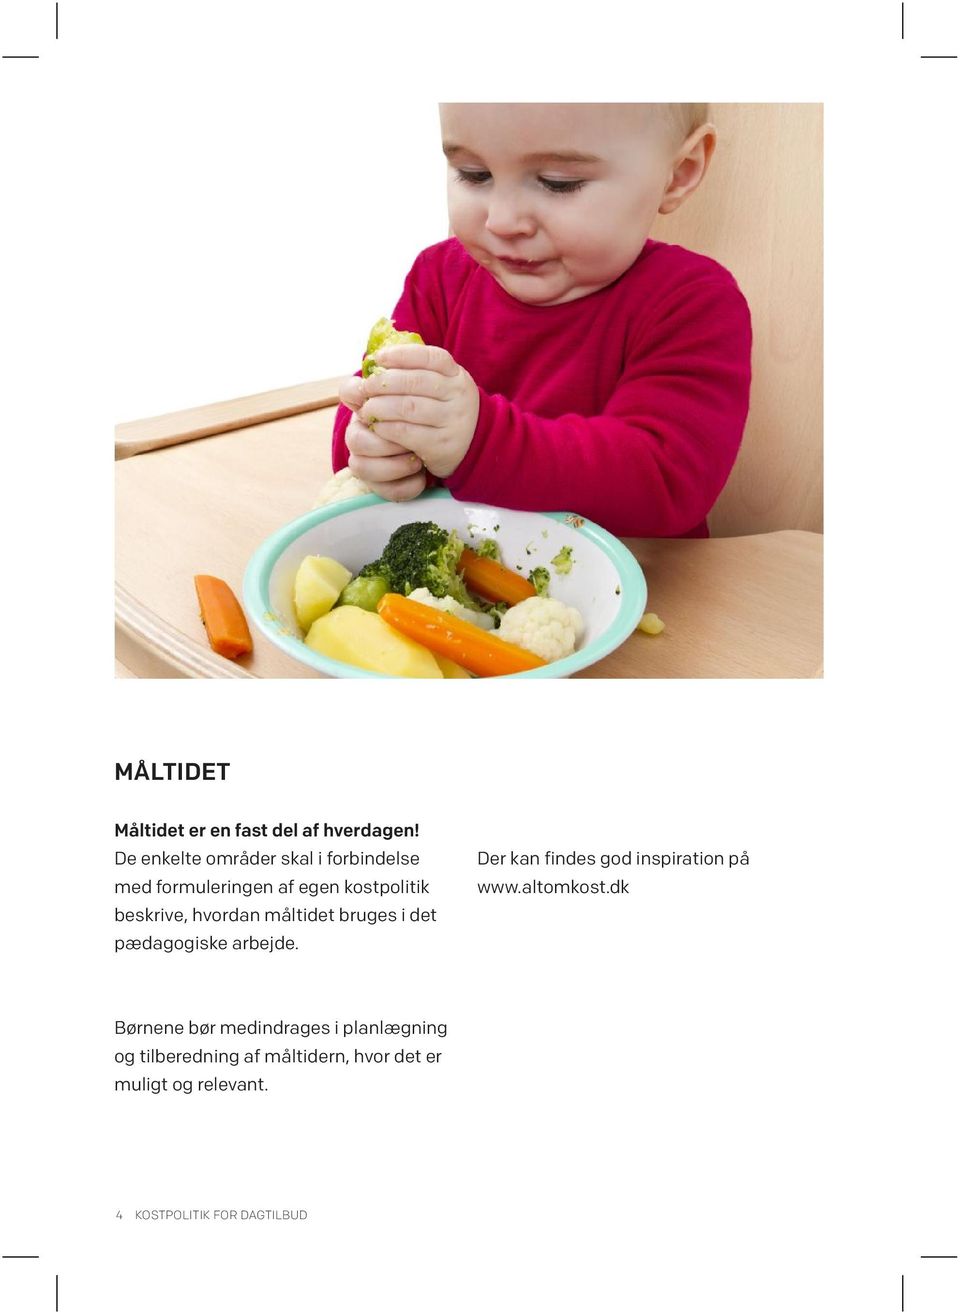 hvordan måltidet bruges i det pædagogiske arbejde. Der kan findes god inspiration på www.